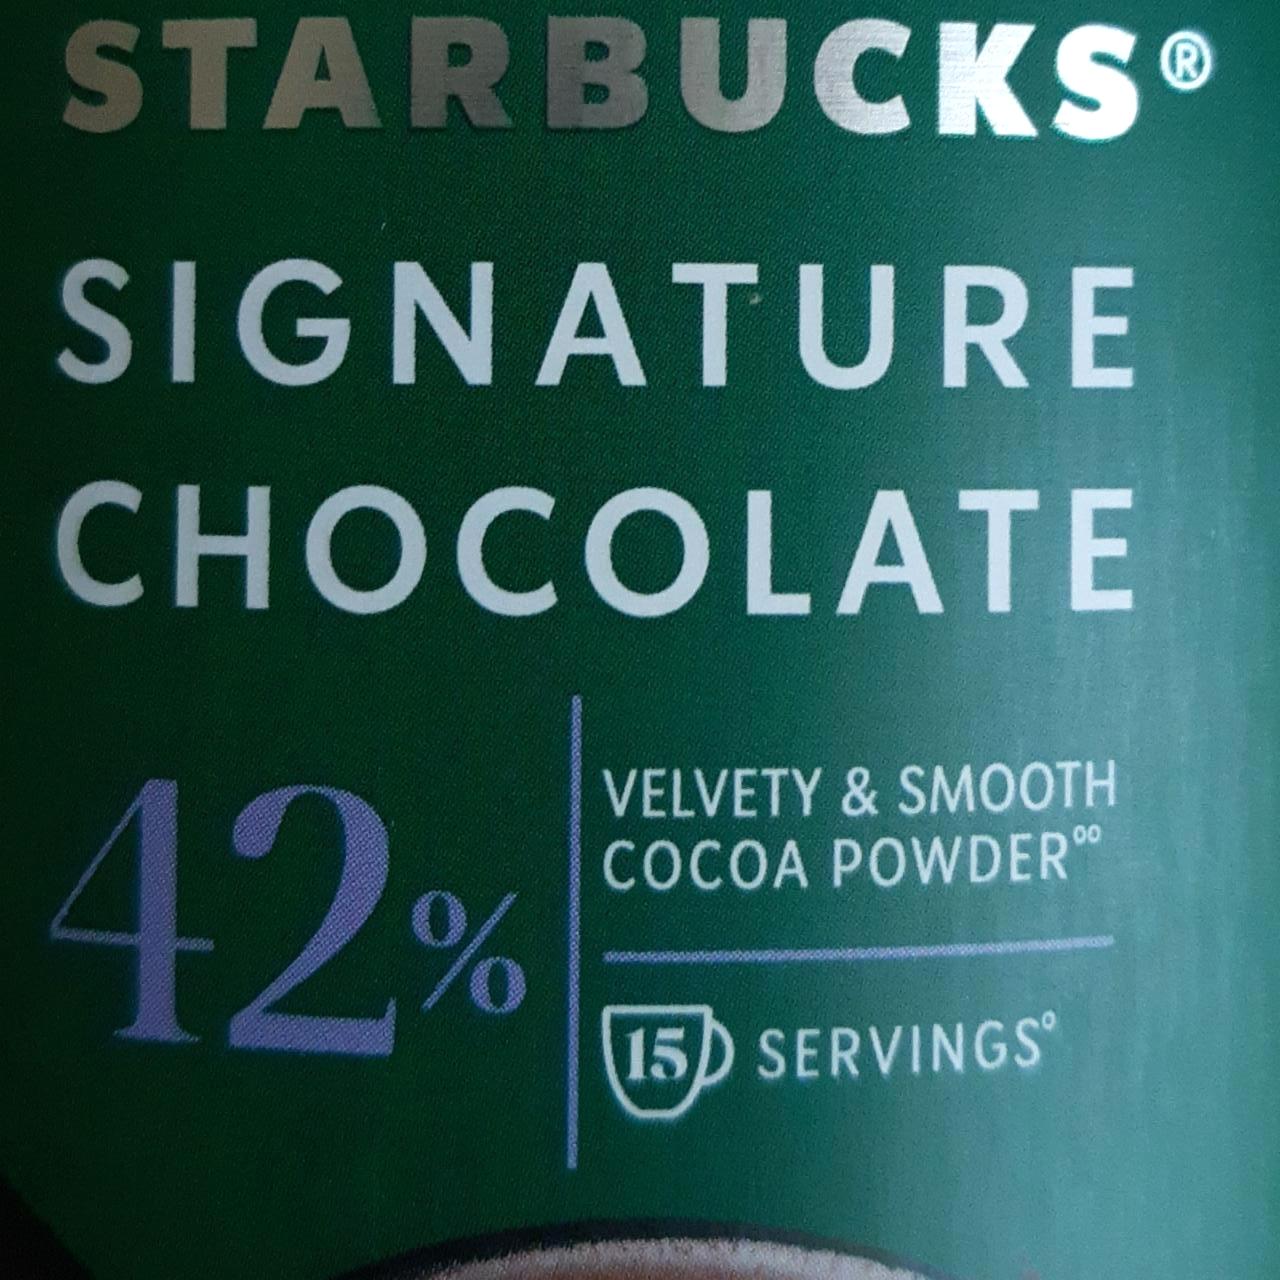 Képek - Signature chocolate Starbucks